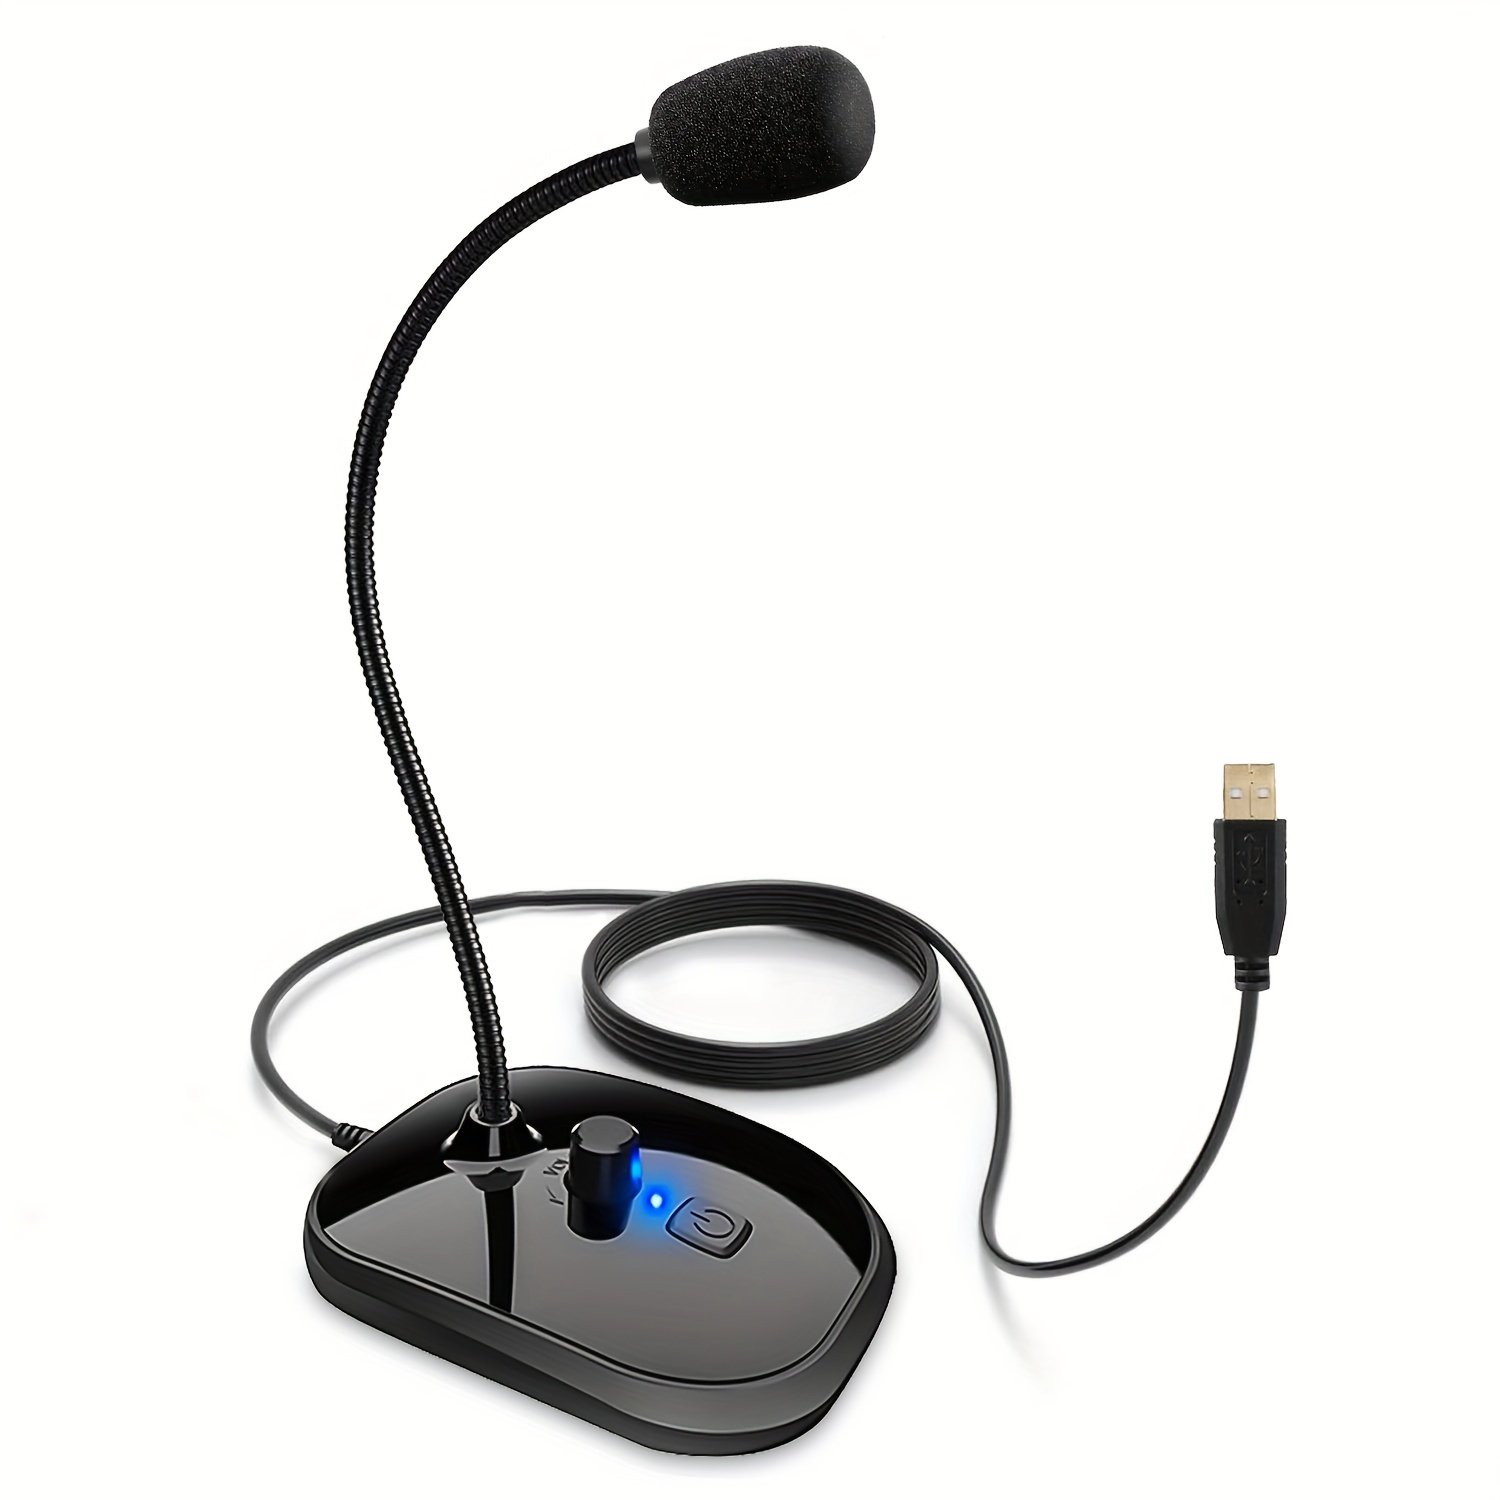 Micrófono para computadora, laptop, escritorio Plug and Play Escritorio  omnidireccional Jack de 0.138 in PC MIC ideal para juegos, reuniones